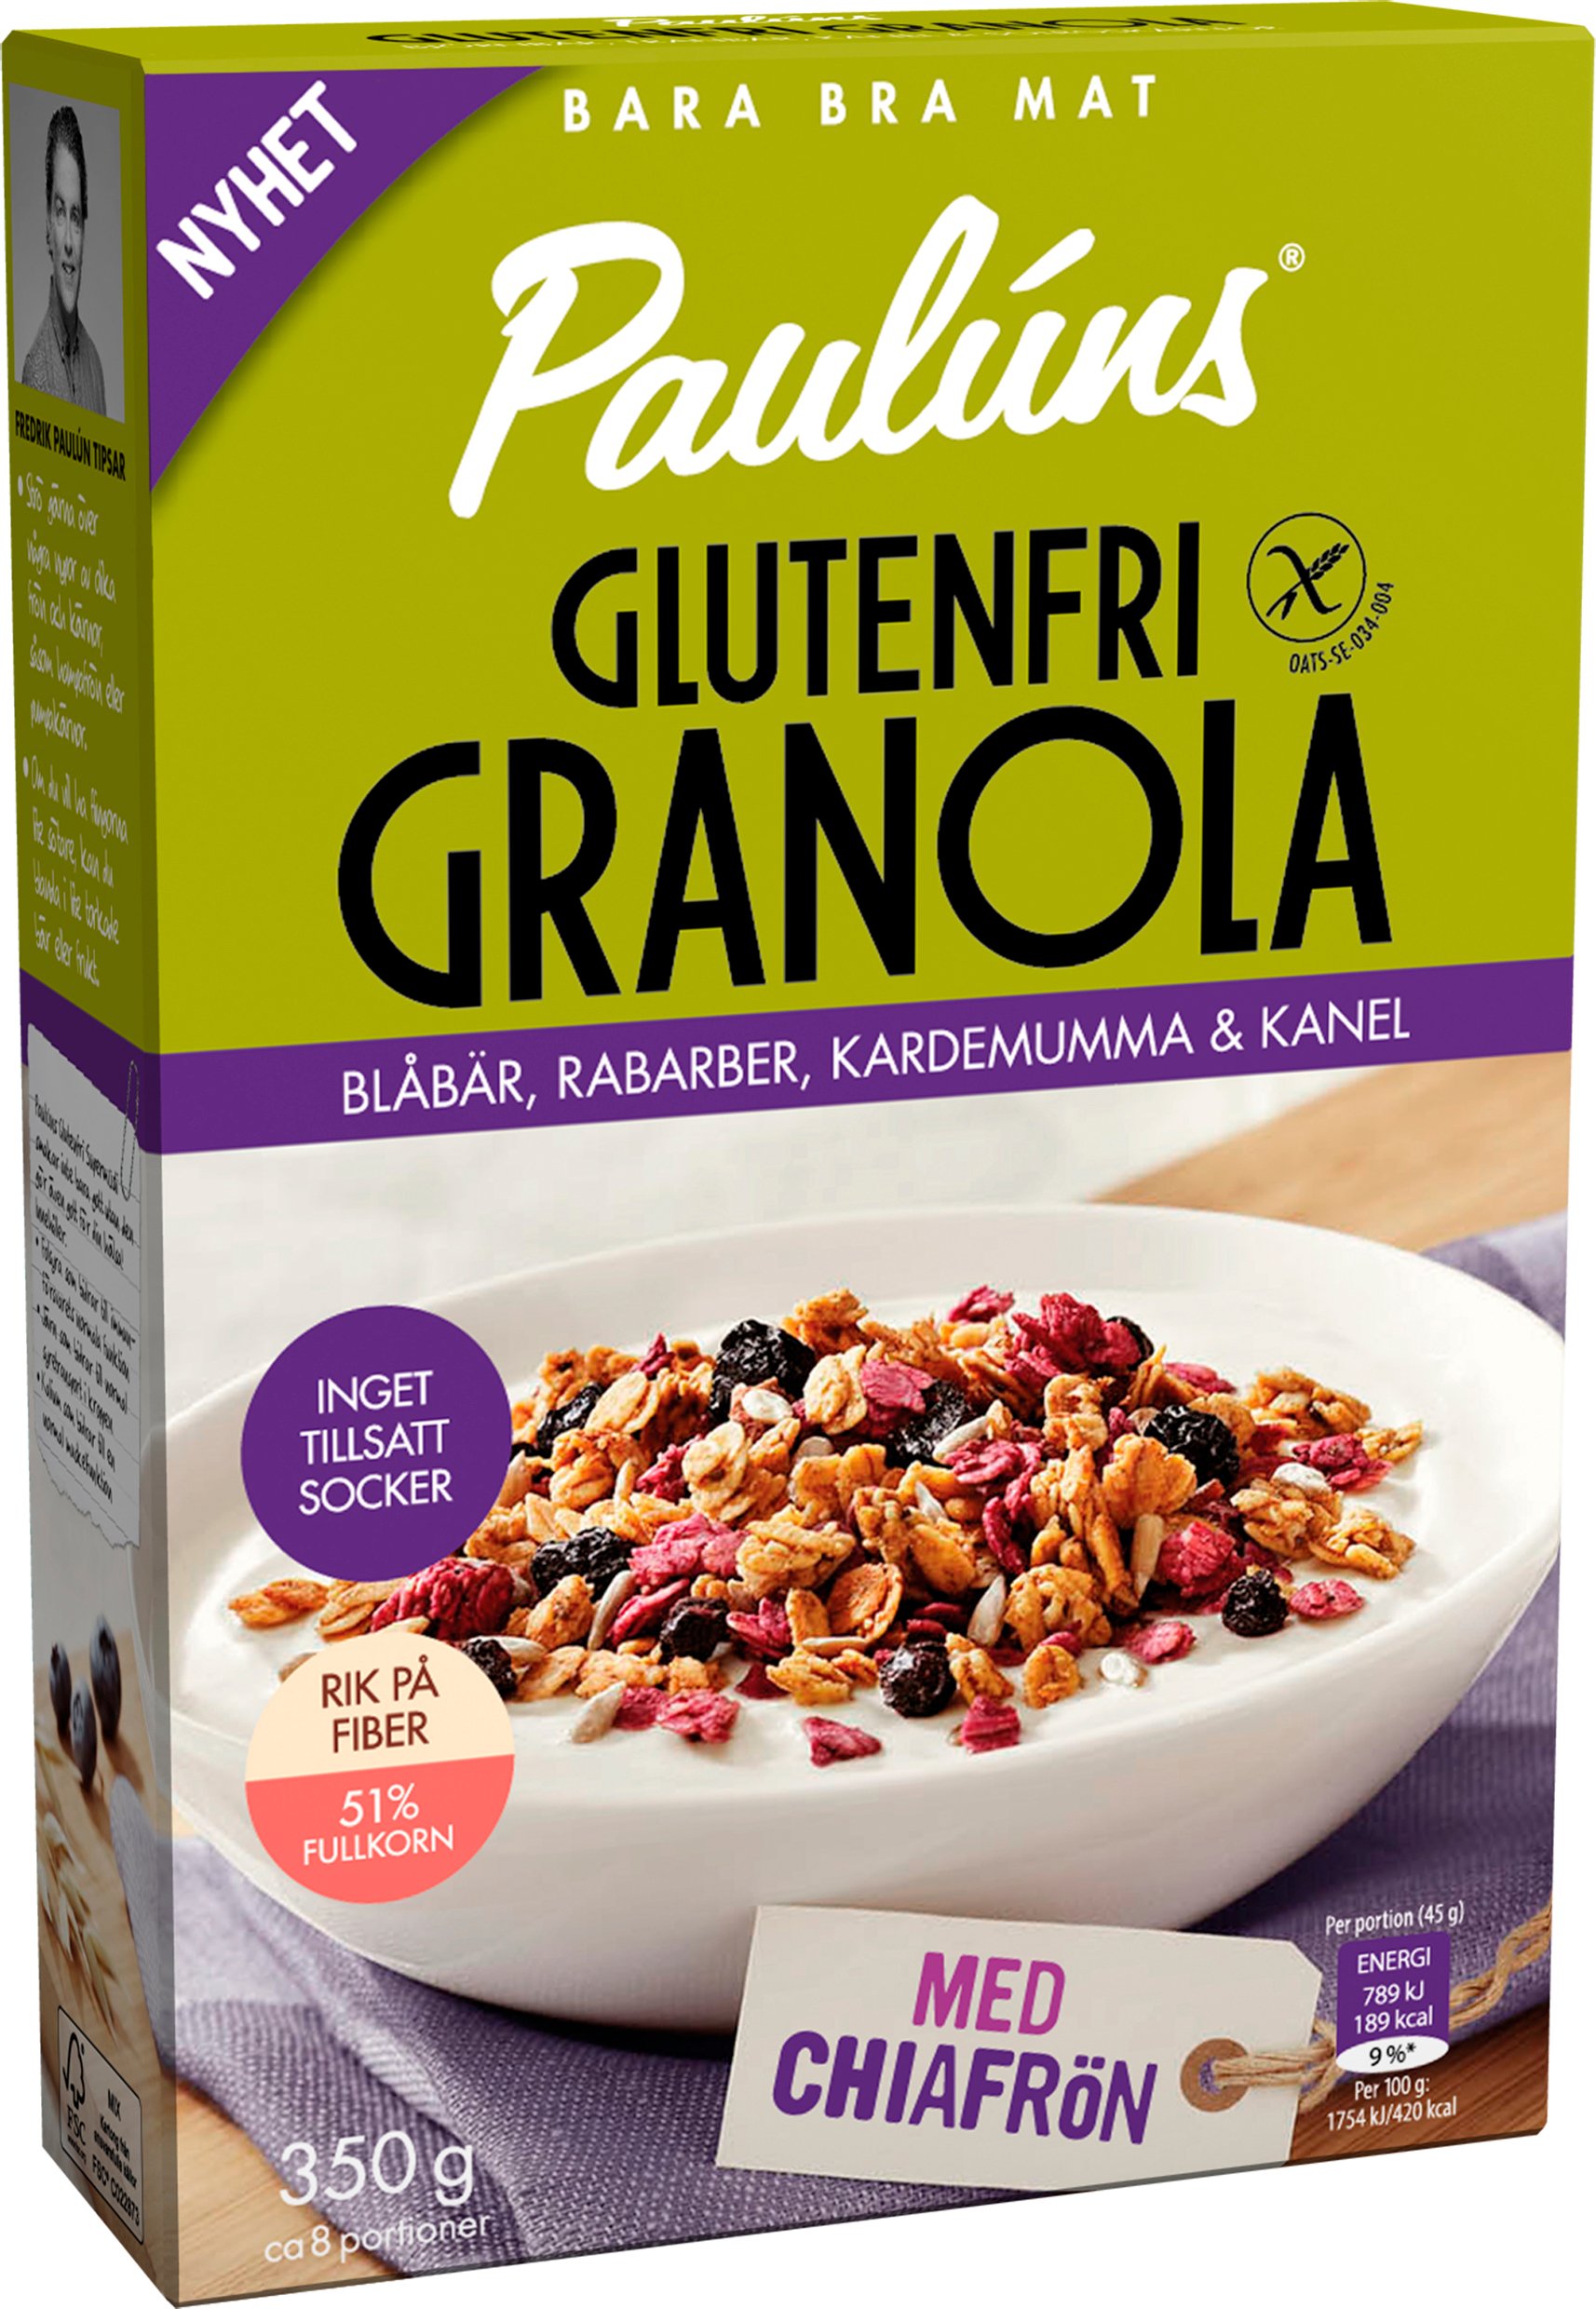 Paulúns Glutenfri Granola med Blåbär 350 g